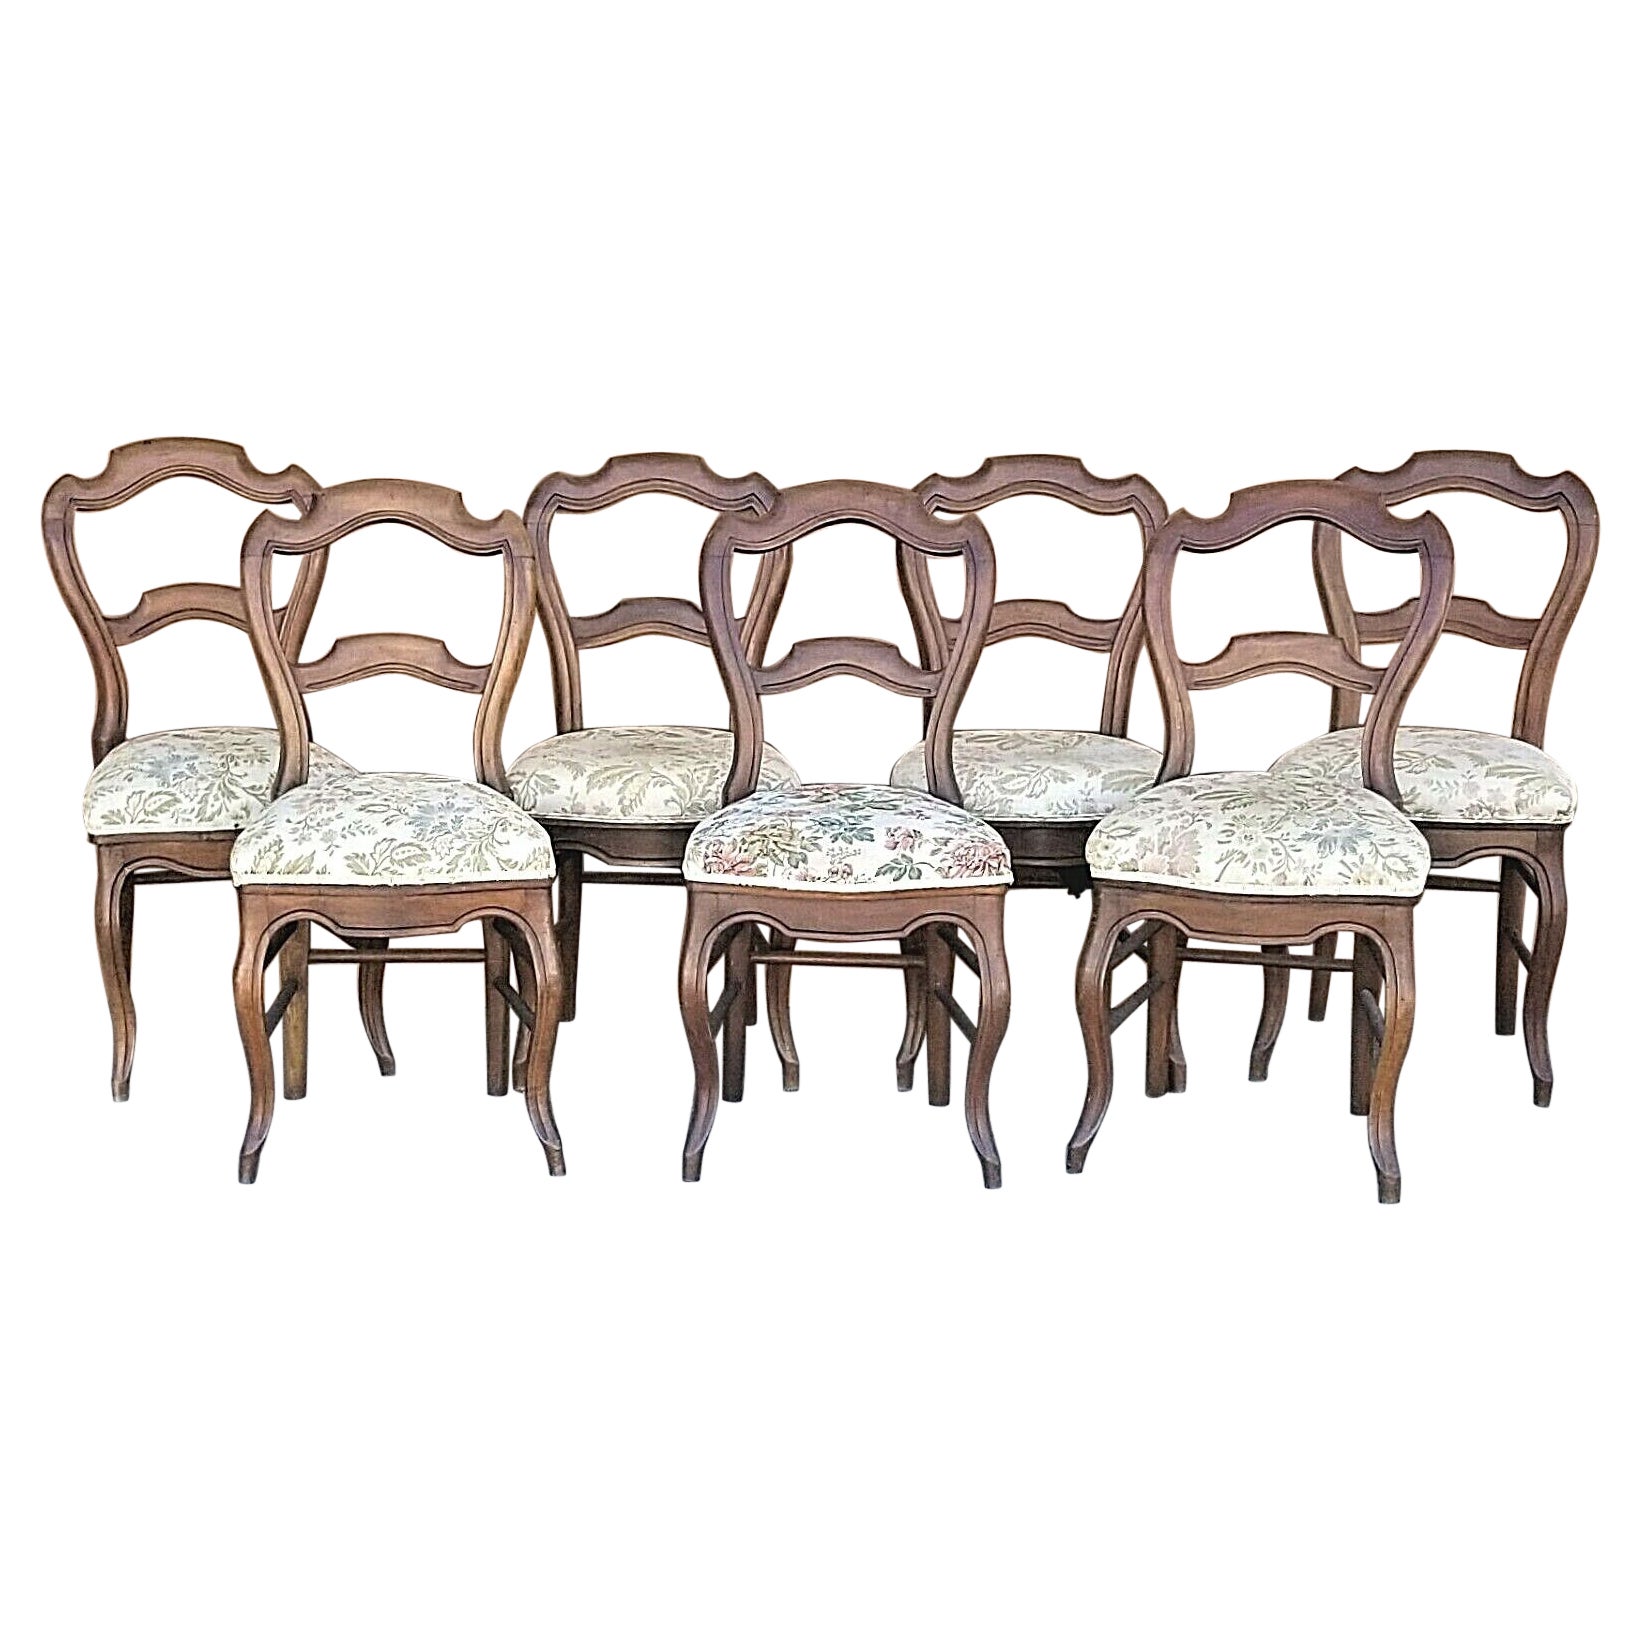 Antike viktorianische Stühle mit Ballonrückenlehne - 7er-Set